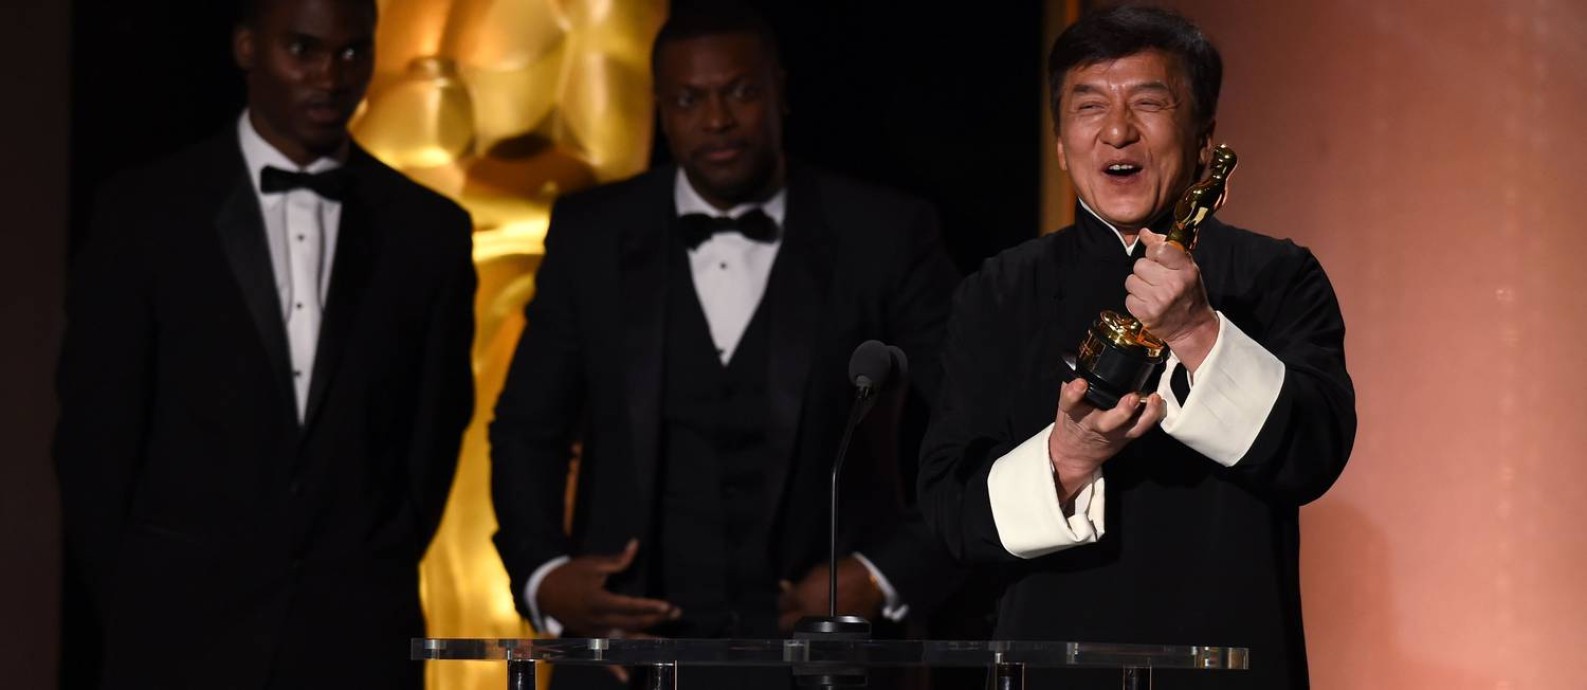 Homenageado, Jackie Chan comemora com seu Oscar Foto: ROBYN BECK / AFP